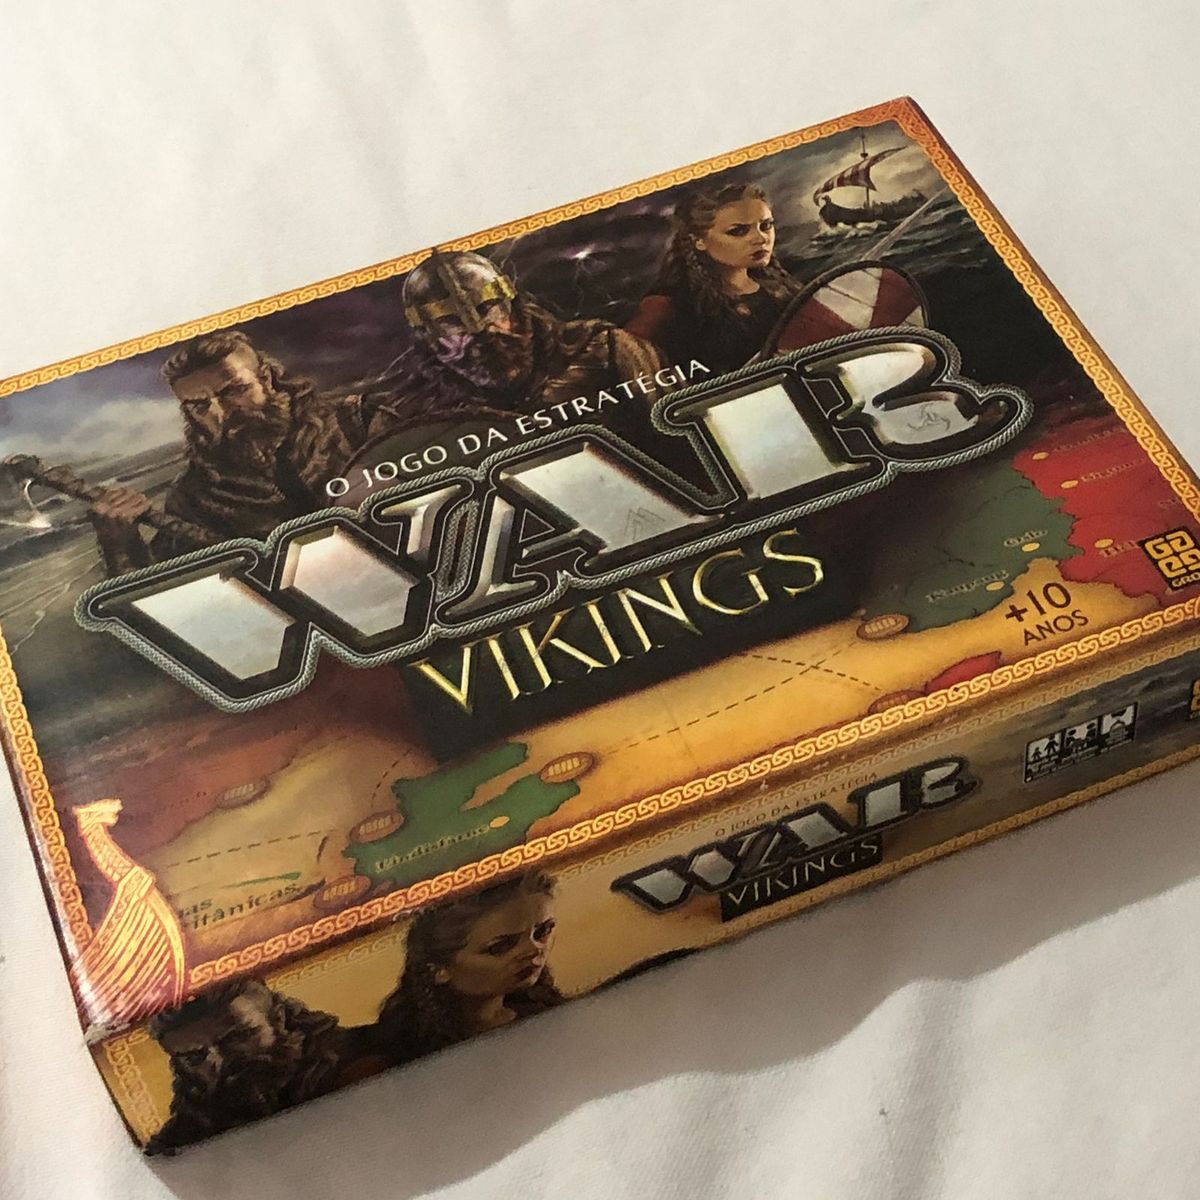 Jogo War Vikings-03450